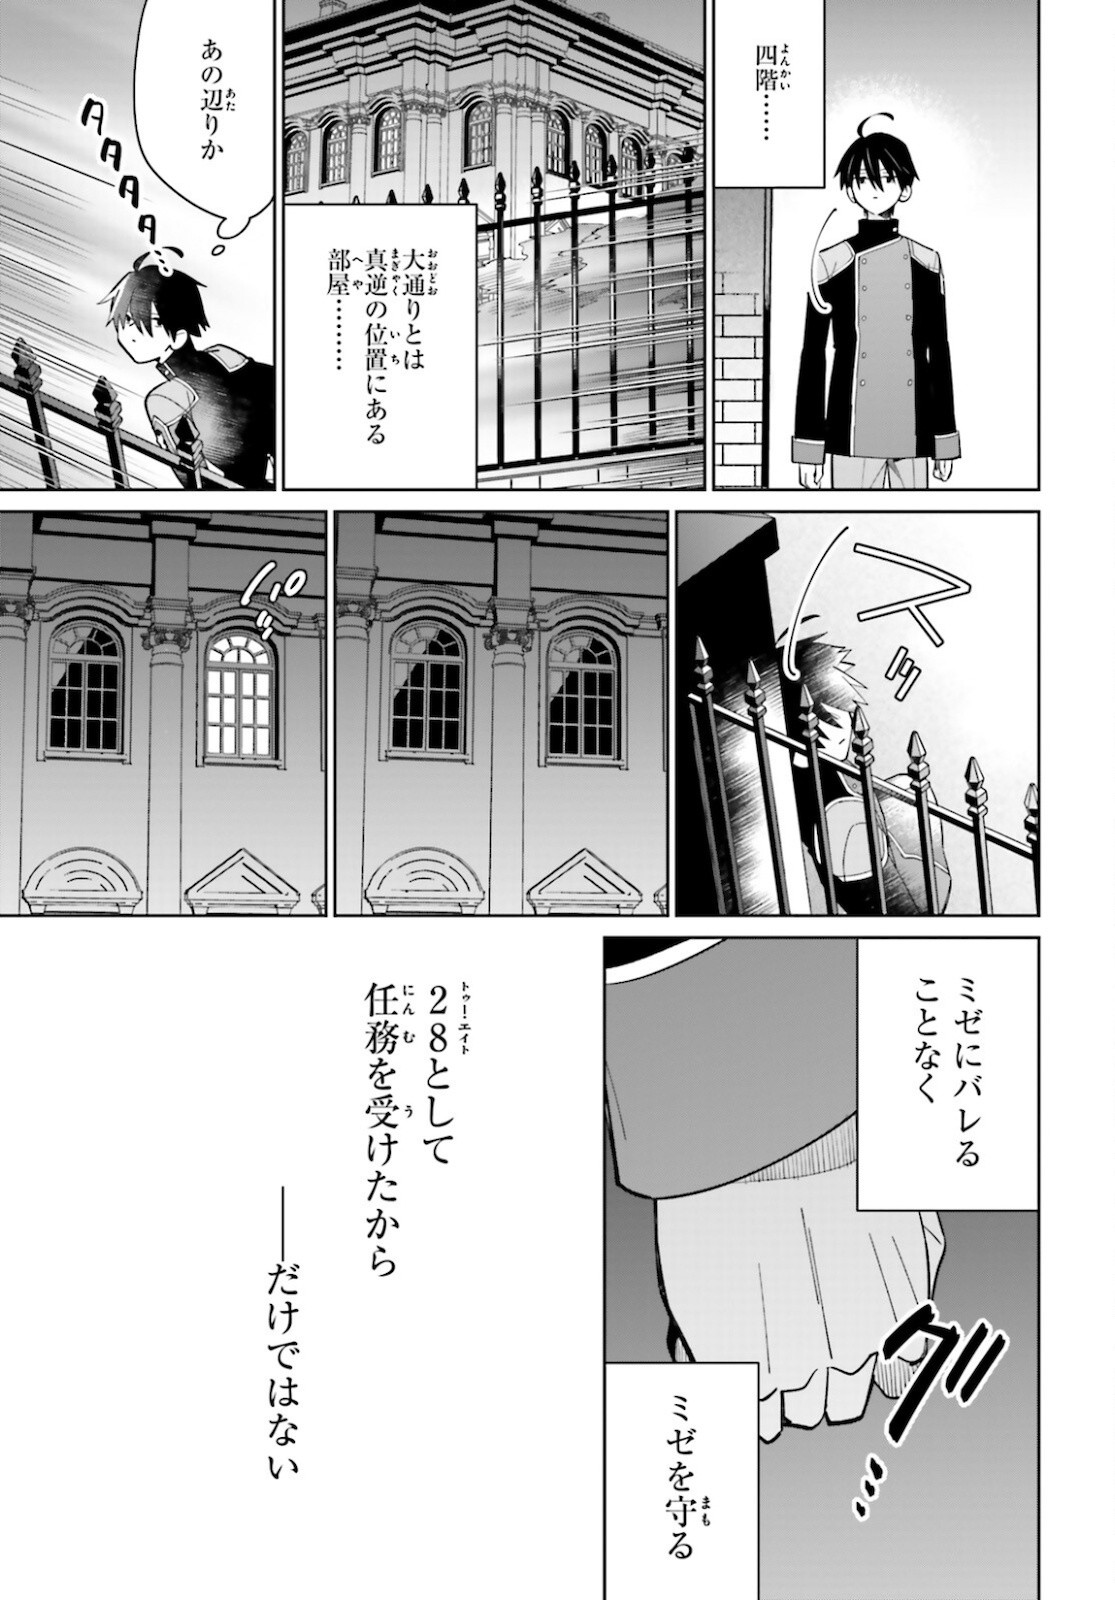 Kage-no-Eiyuu-no-Nichijou-tan-Ichi-no-Yuusha-no-Ura-de-An'yaku-Shite-ita-Saikyou-no-Eijento-Soshiki-ga-Kaitai-sareta-no-de-Shoutai-Kakushite-Hito-nami-no-Nichijou-o-Ouka-suru - Chapter 11 - Page 31